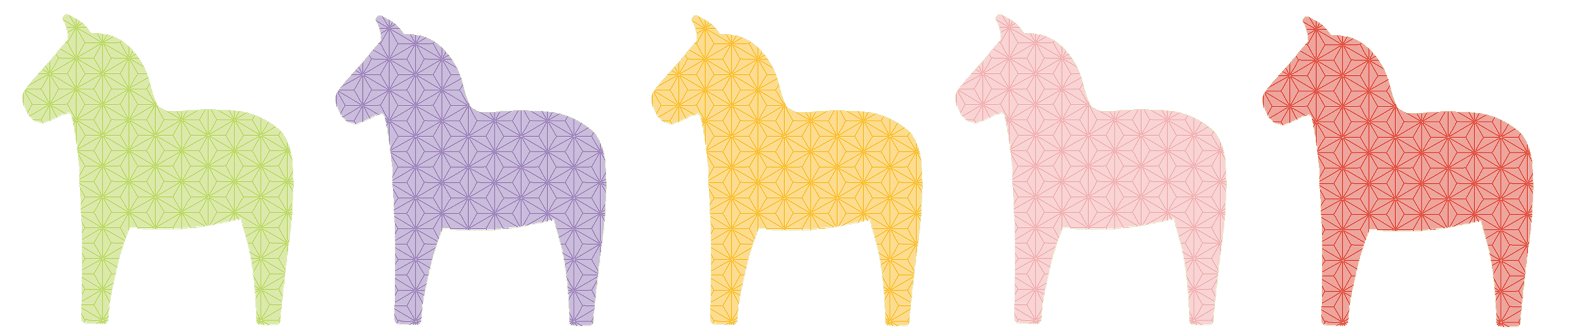 Ccraftあんさみー イラスト担当 ツイッターで楽しむ展覧会 馬のイラストを描いています うまかお うまけつ ダーラナホース T Co Iathghjasm Twitter